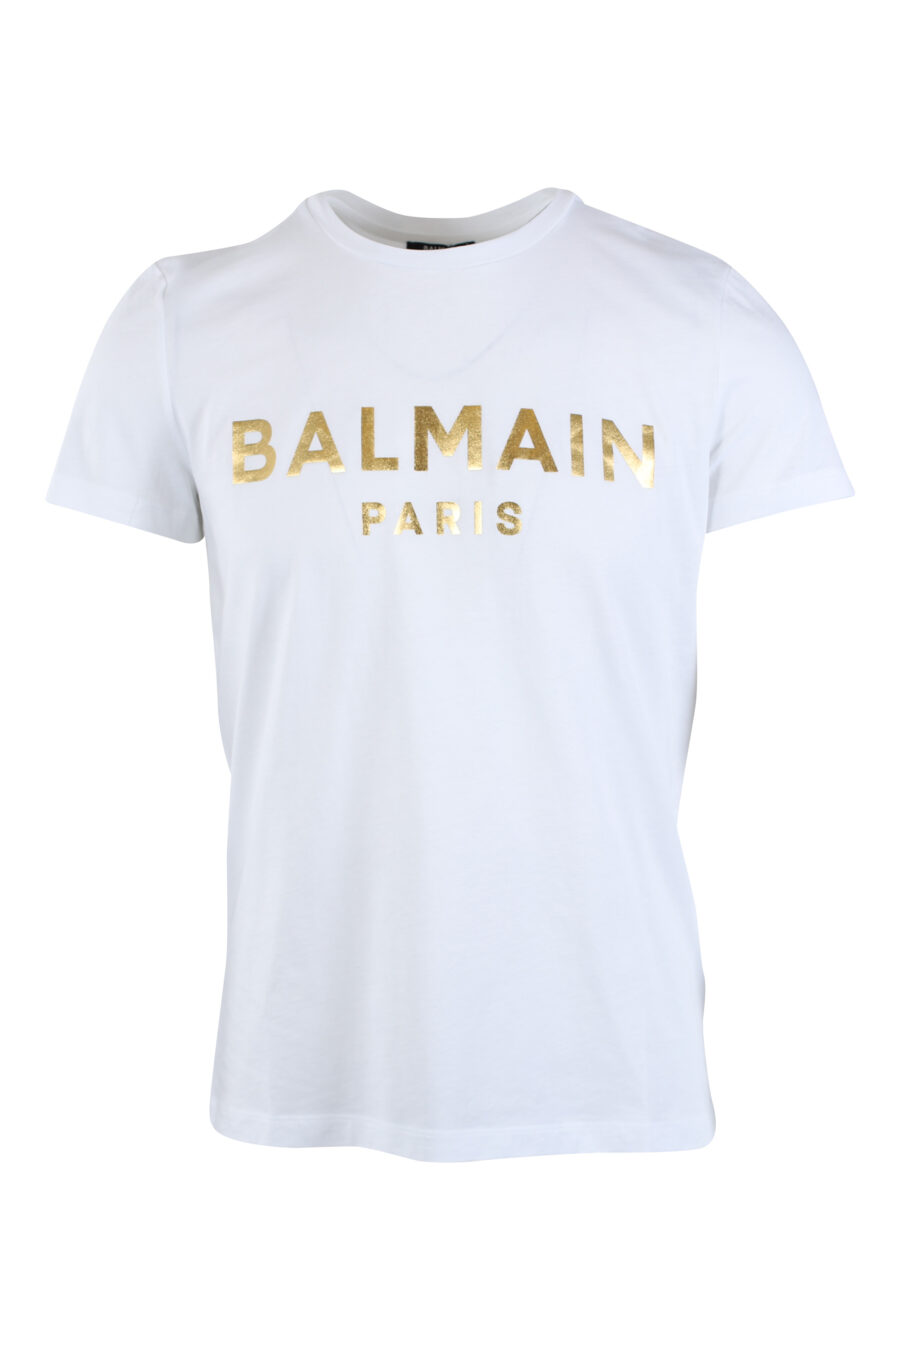 Balmain - Camiseta blanca con maxilogo dorado 